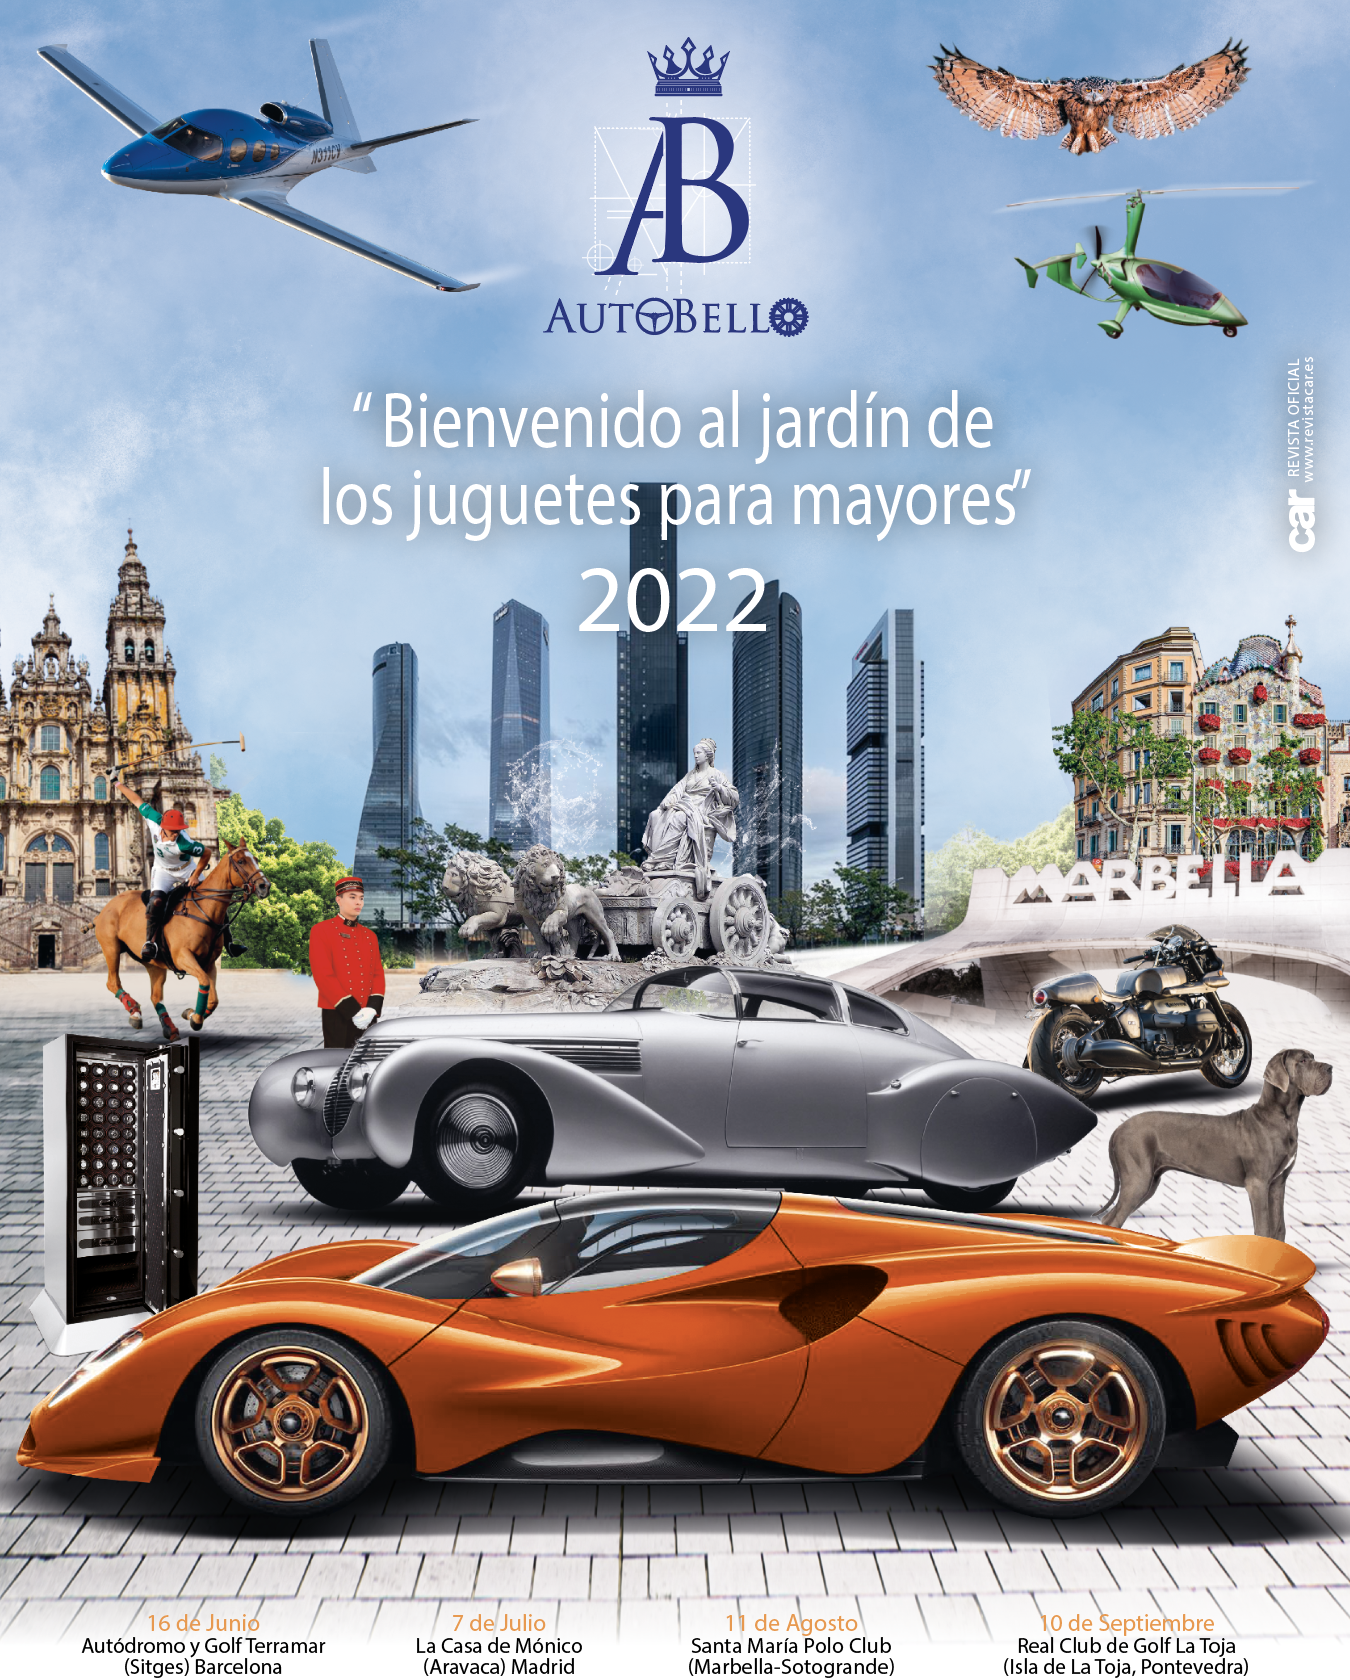 TEAM CAR SPAIN PUBLICACIONES, S.L